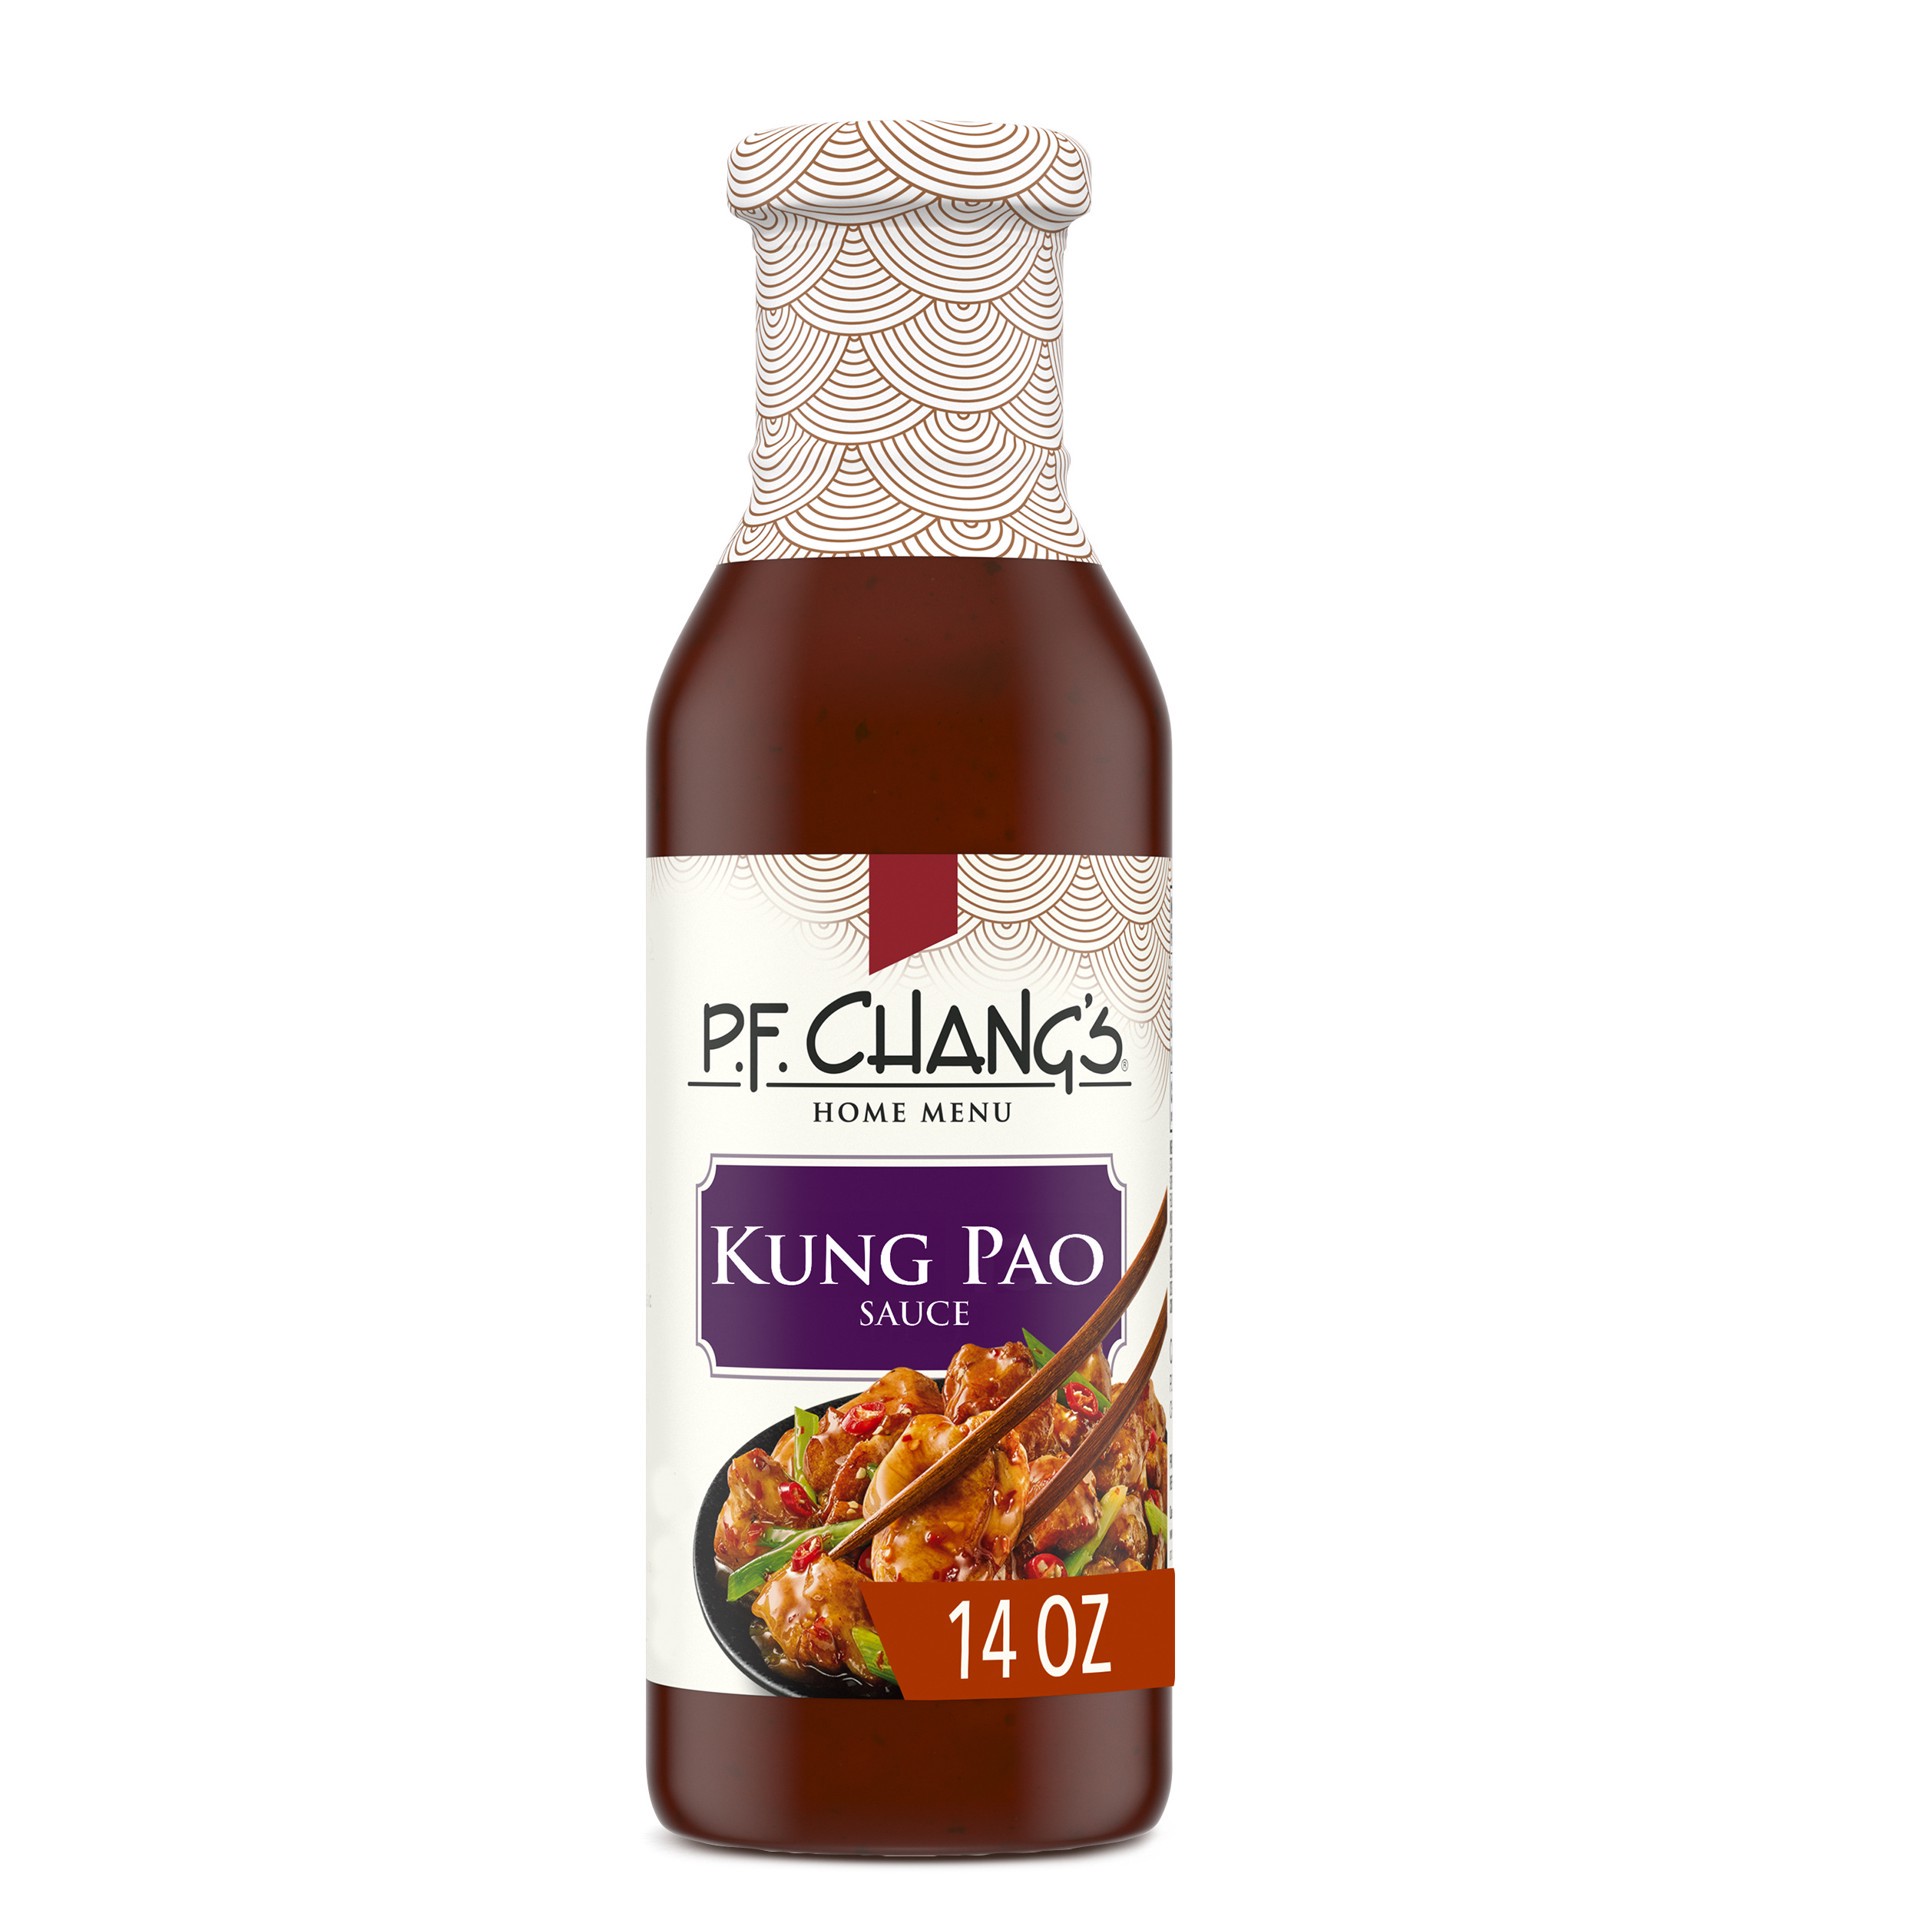 slide 1 of 5, P.F. Chang's Home Menu Kung Pao Sauce 14 oz, 14 oz